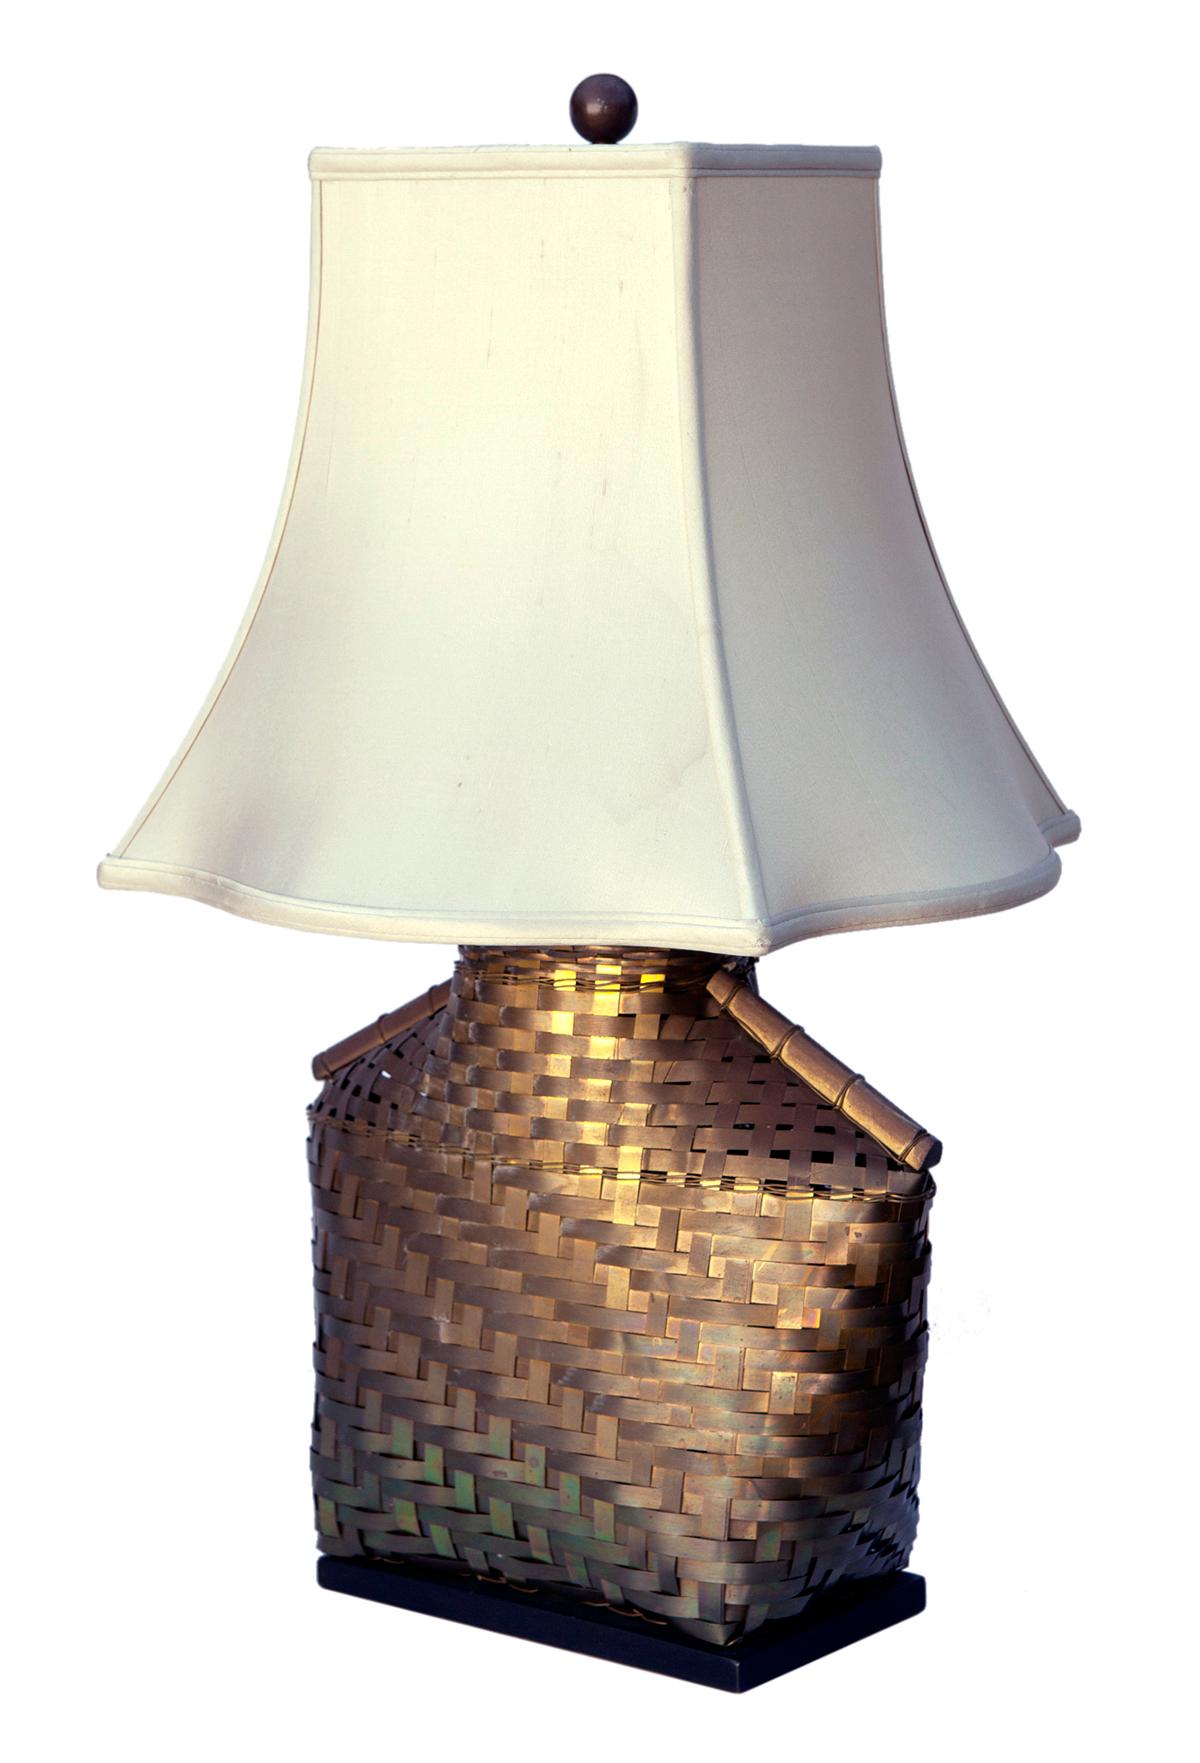 Asiatisch inspirierte Chapman-Tischlampe aus der Mitte des Jahrhunderts aus handgeflochtenem Messing, die auf einem Sockel aus Ebenholz ruht.
Gepaart mit einem Aftermarket-Schirm, der nicht in perfektem Zustand ist, siehe Bilder für Details